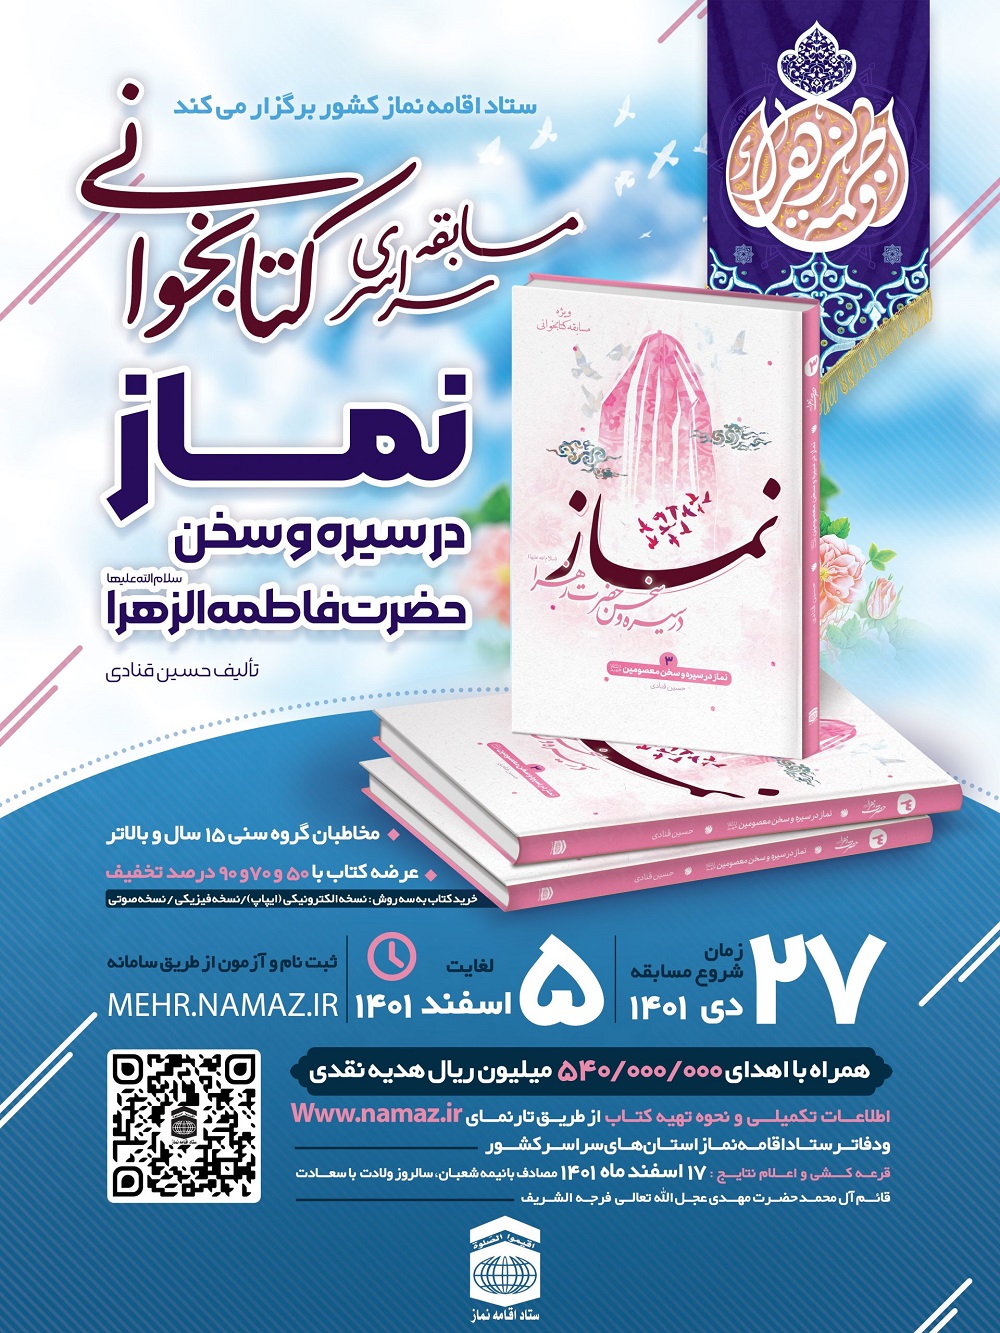 مسابقه کتابخوانی" نماز در سیره و سخن حضرت فاطمه زهرا سلام الله علیها